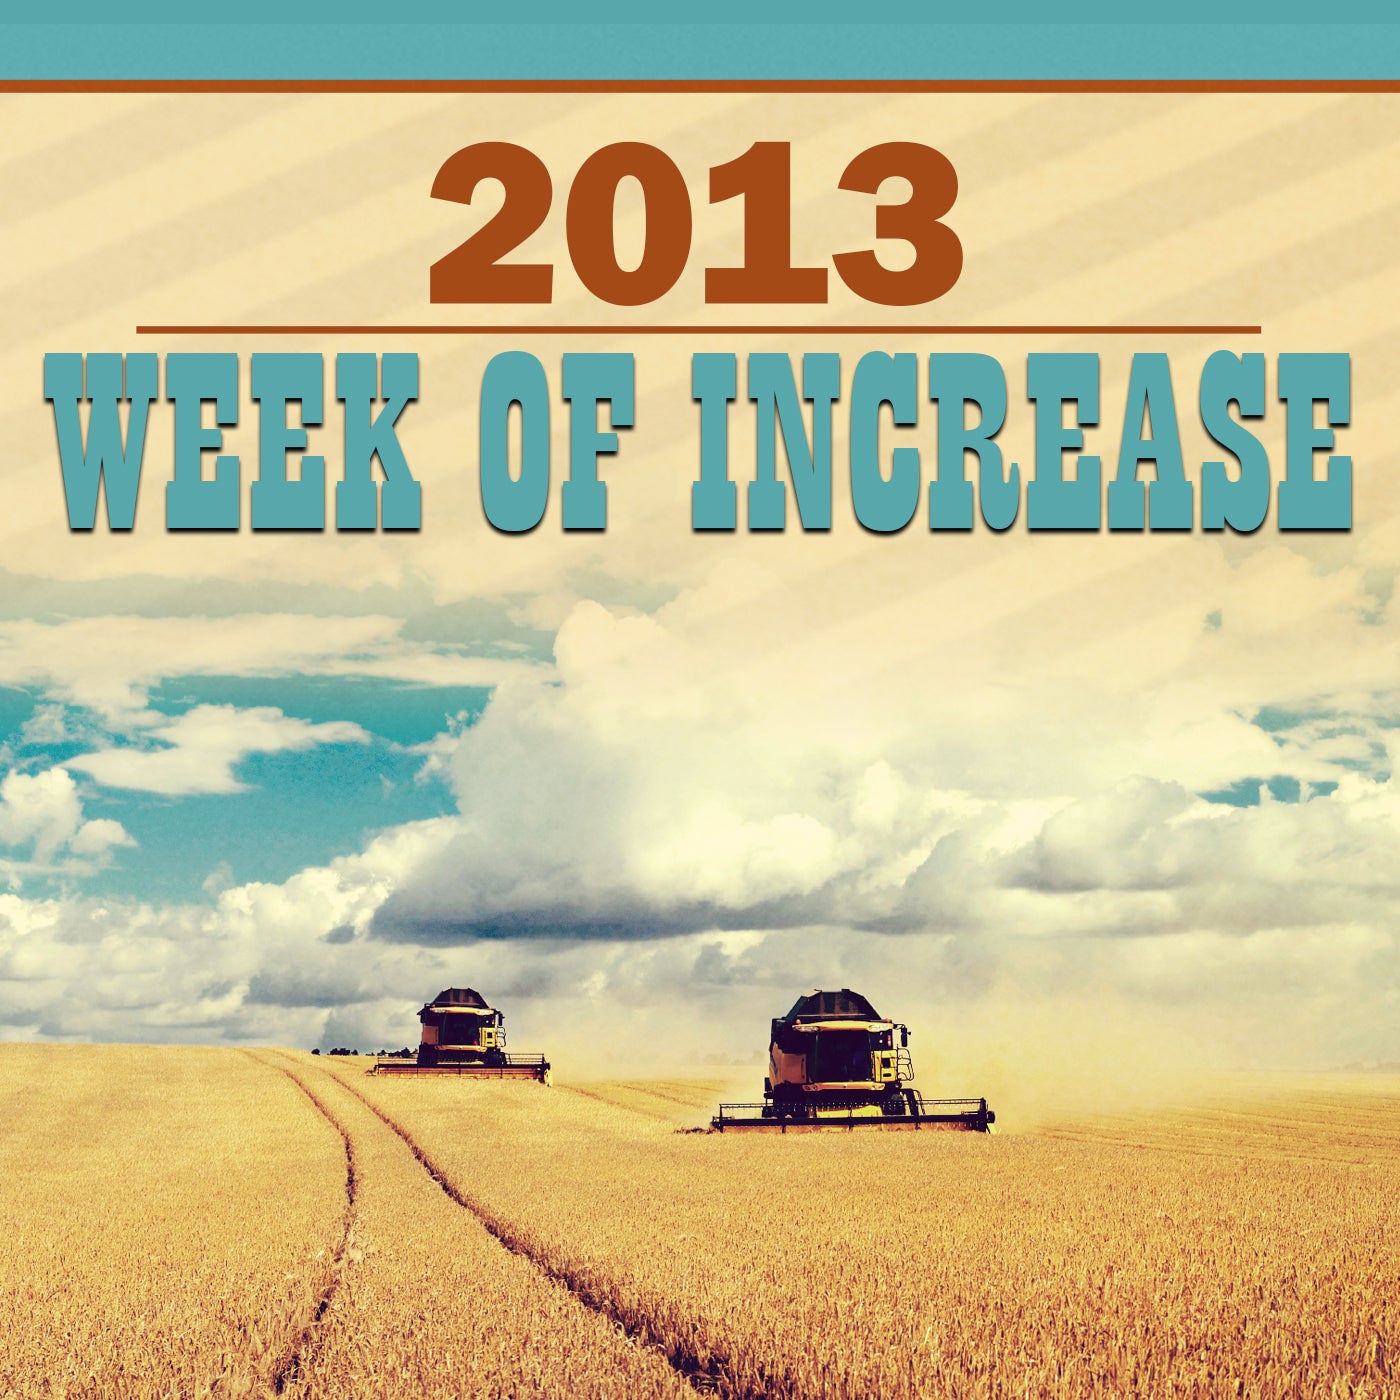 Week Of Increase 2013 SD Video